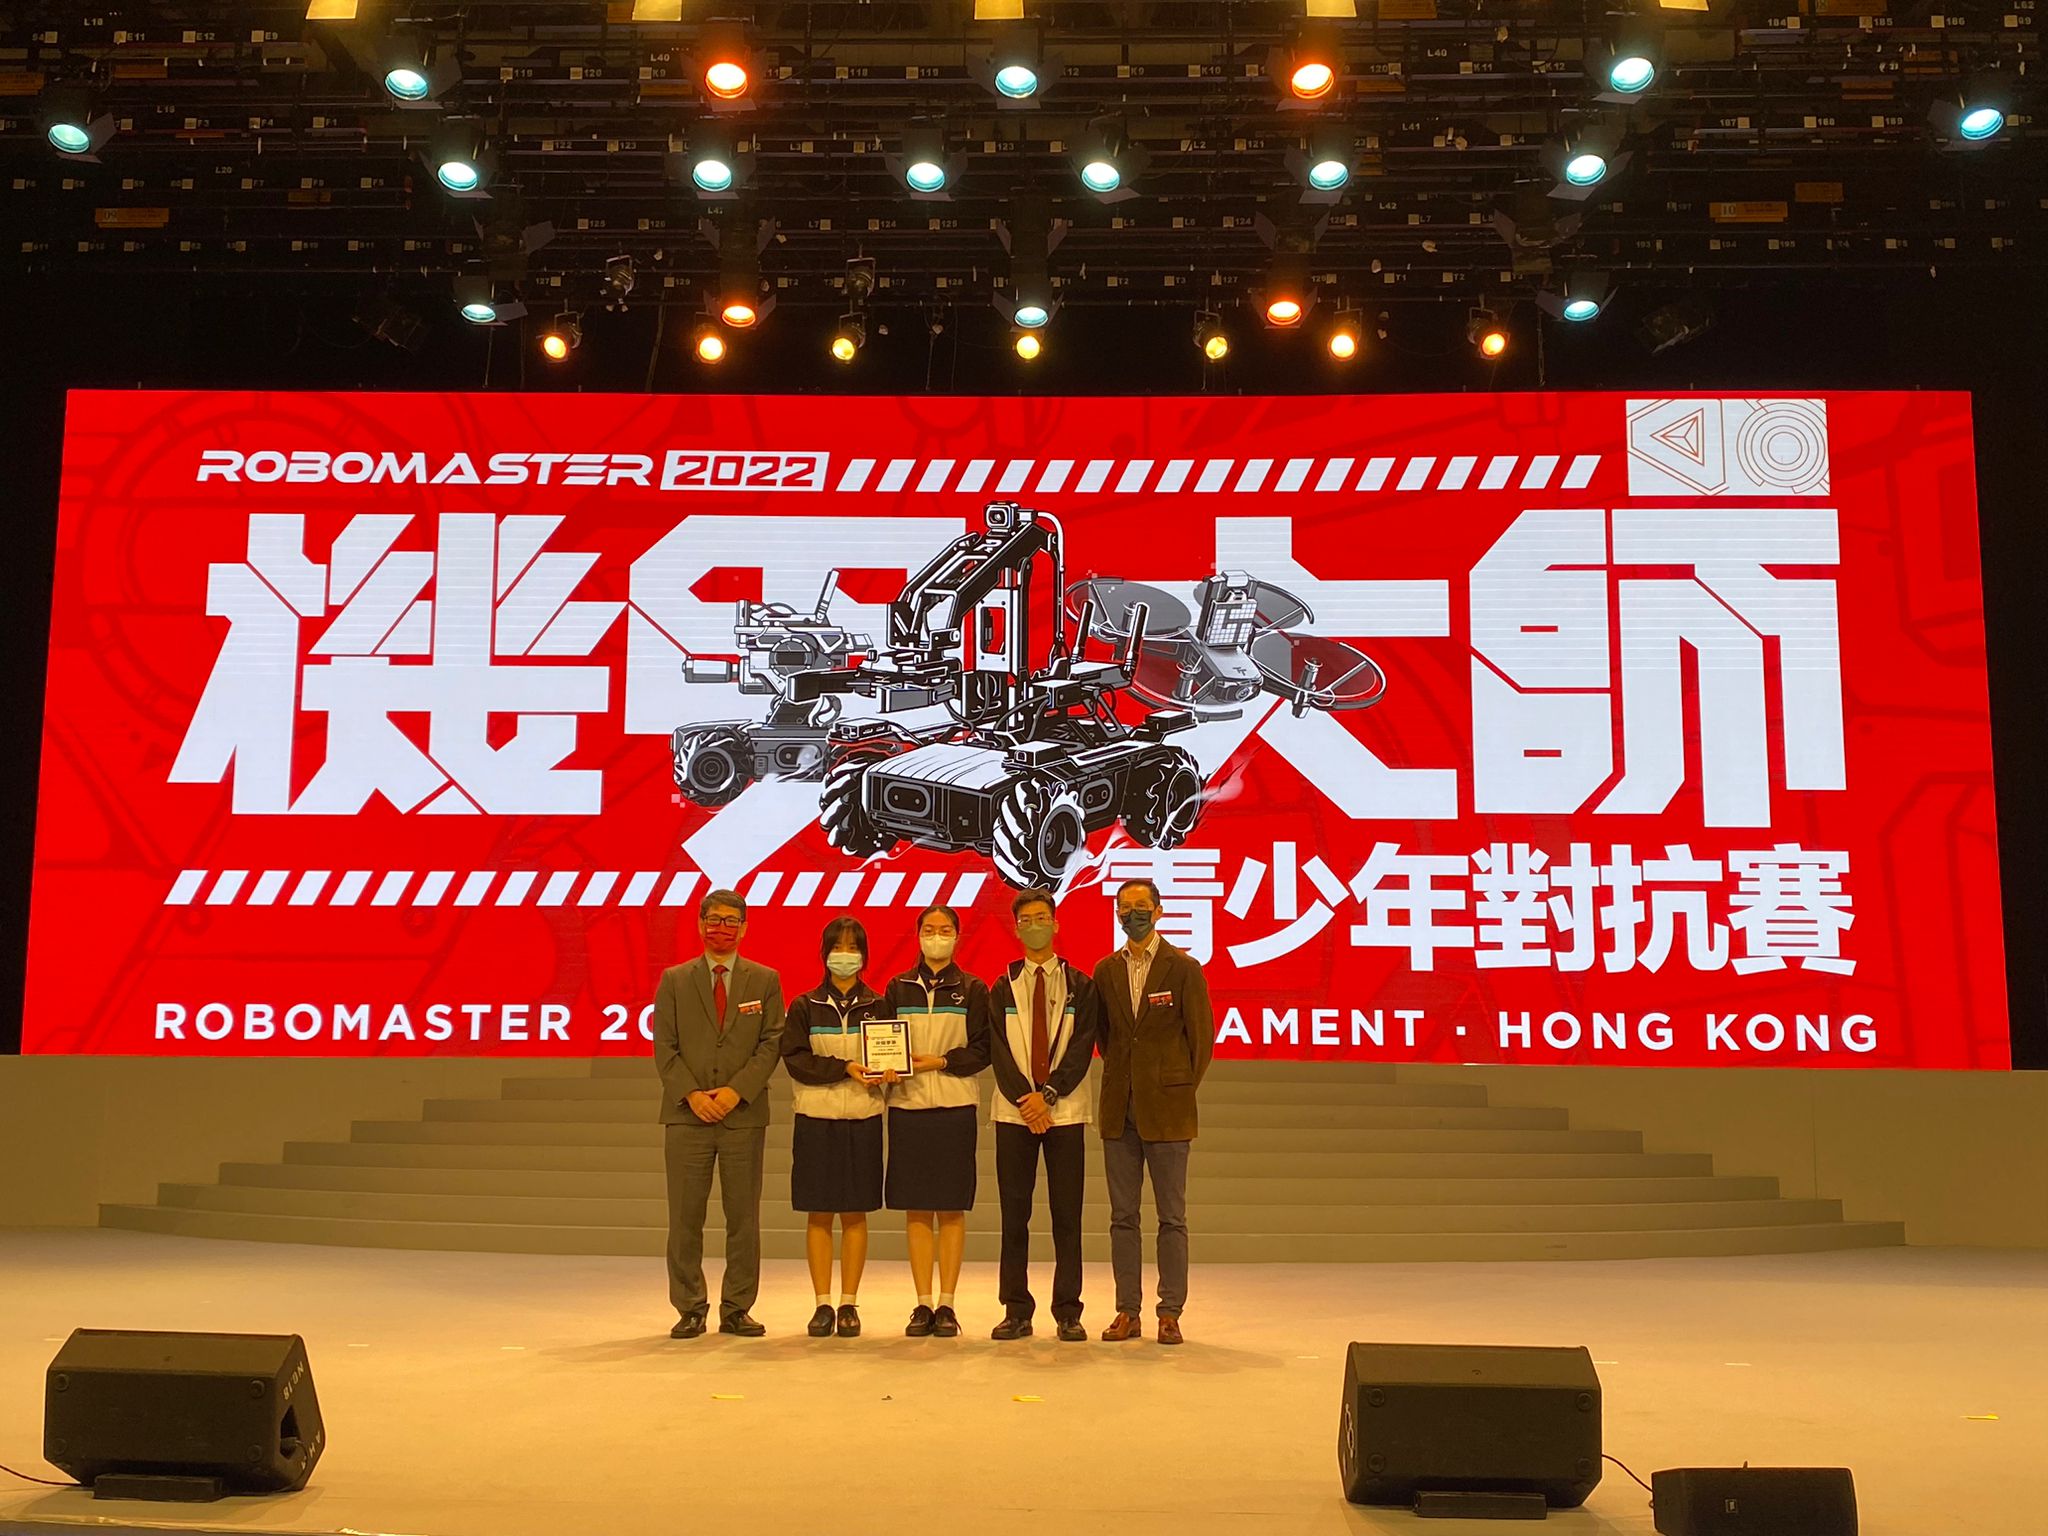 RoboMaster 2022 Youth Tournament (Hong Kong) Division 2nd Runner-up